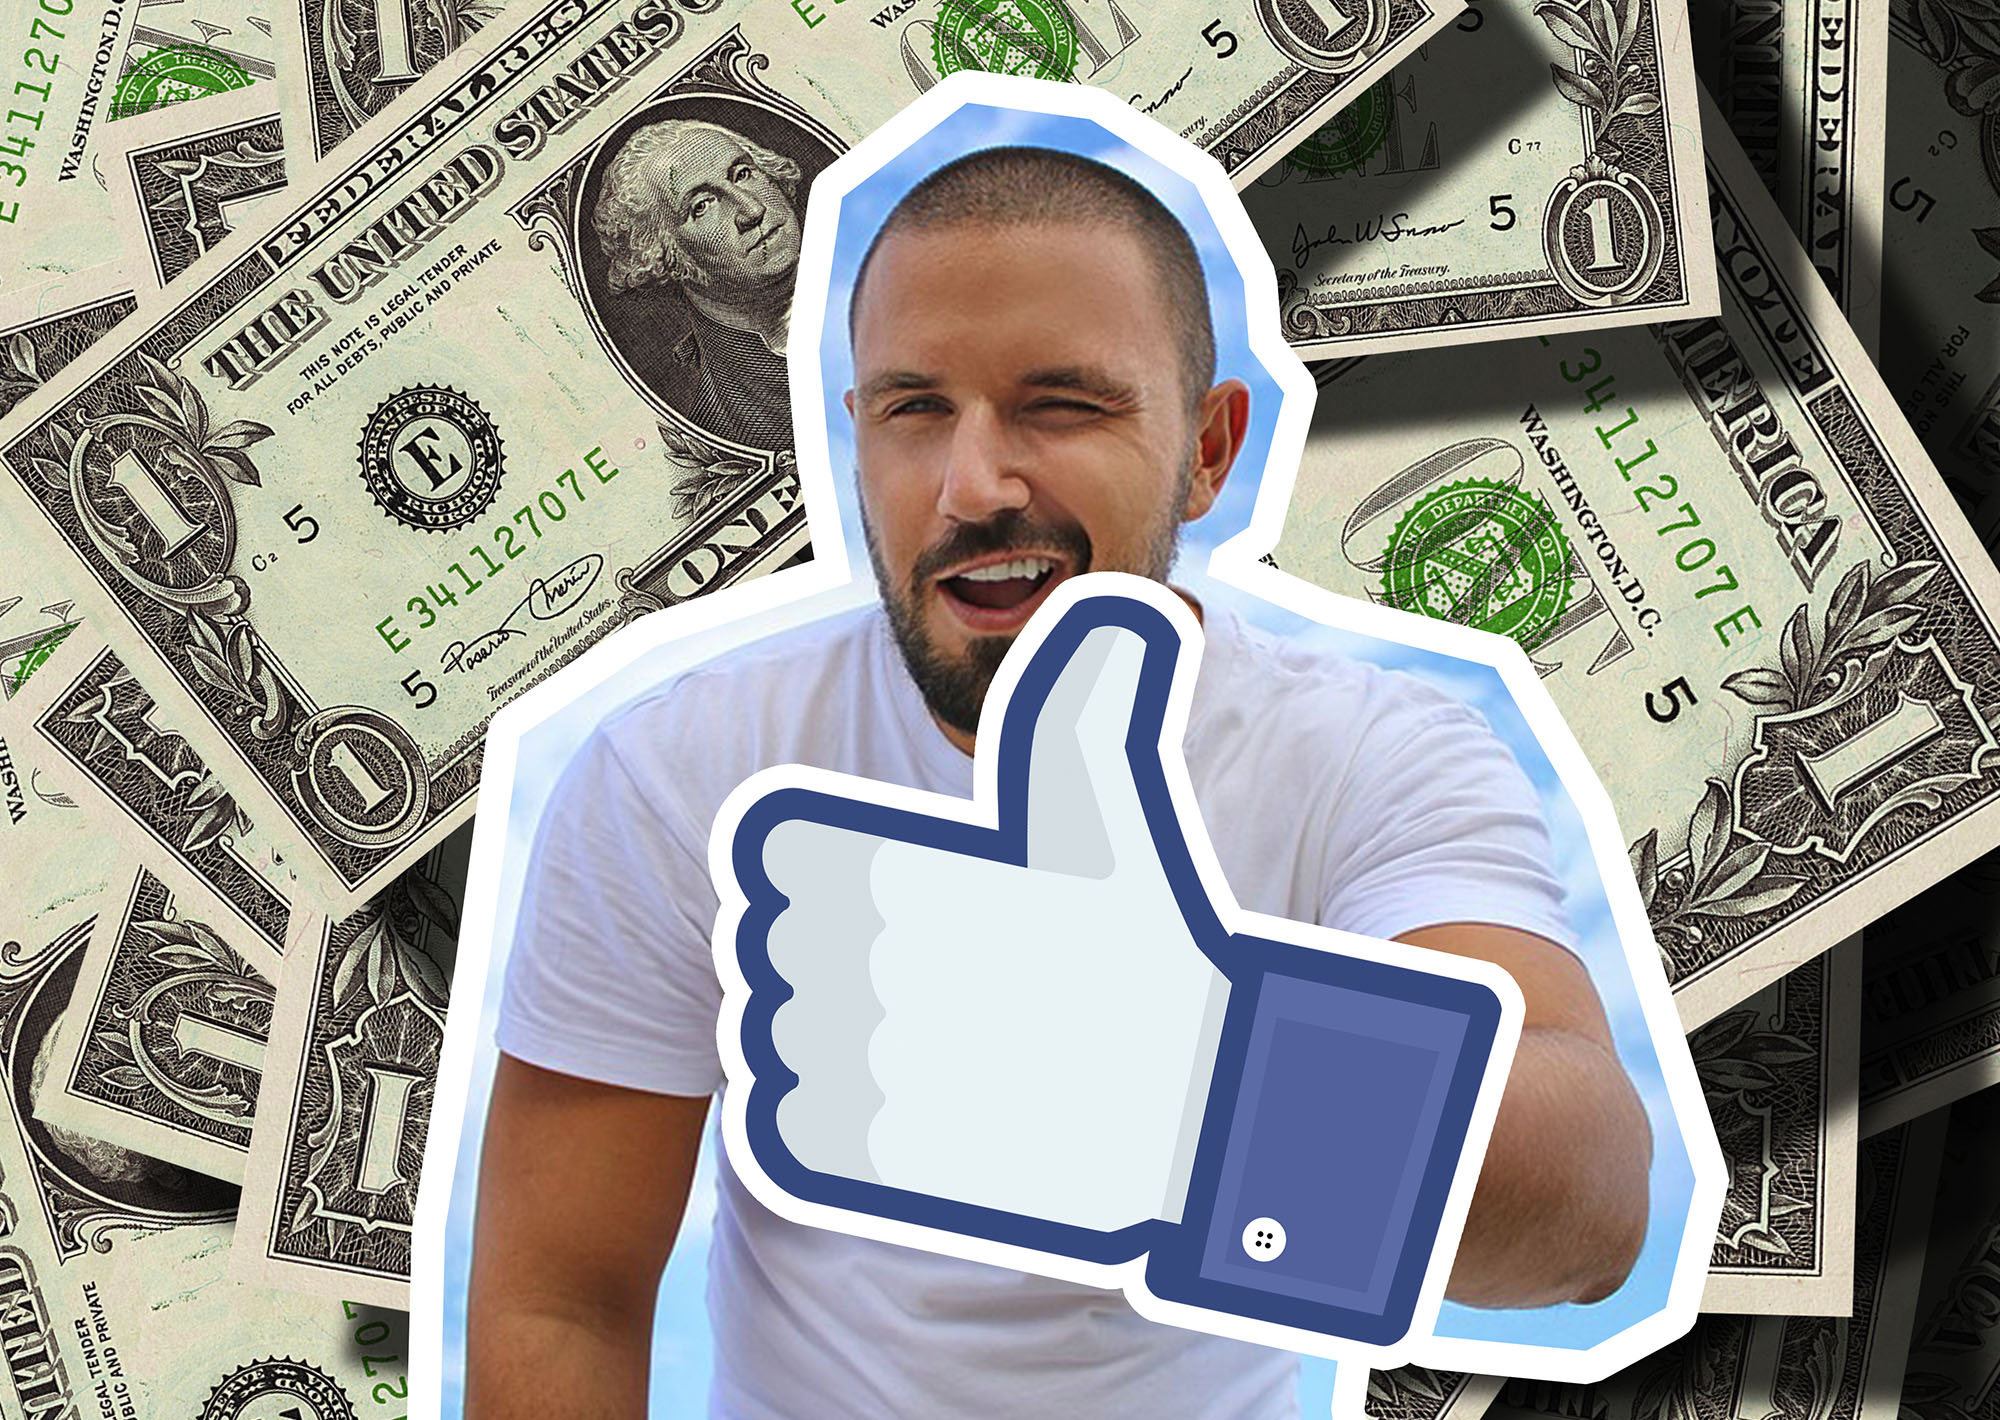 Membuka Jasa Like Cara dapat uang dari Facebook